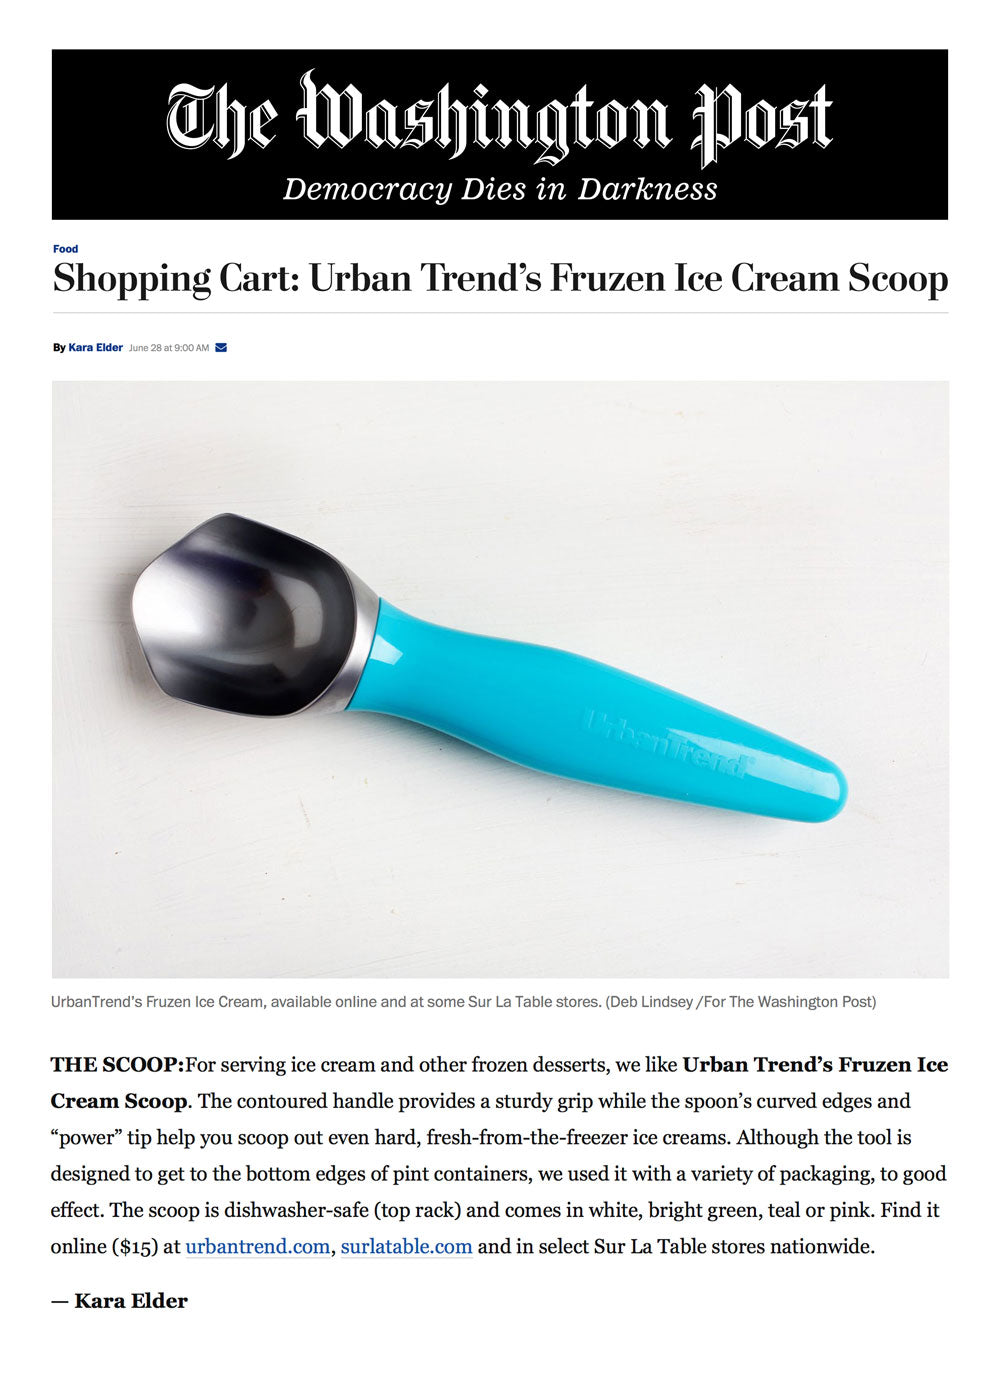 Urban Trends Frozen Ice Cream Scoop